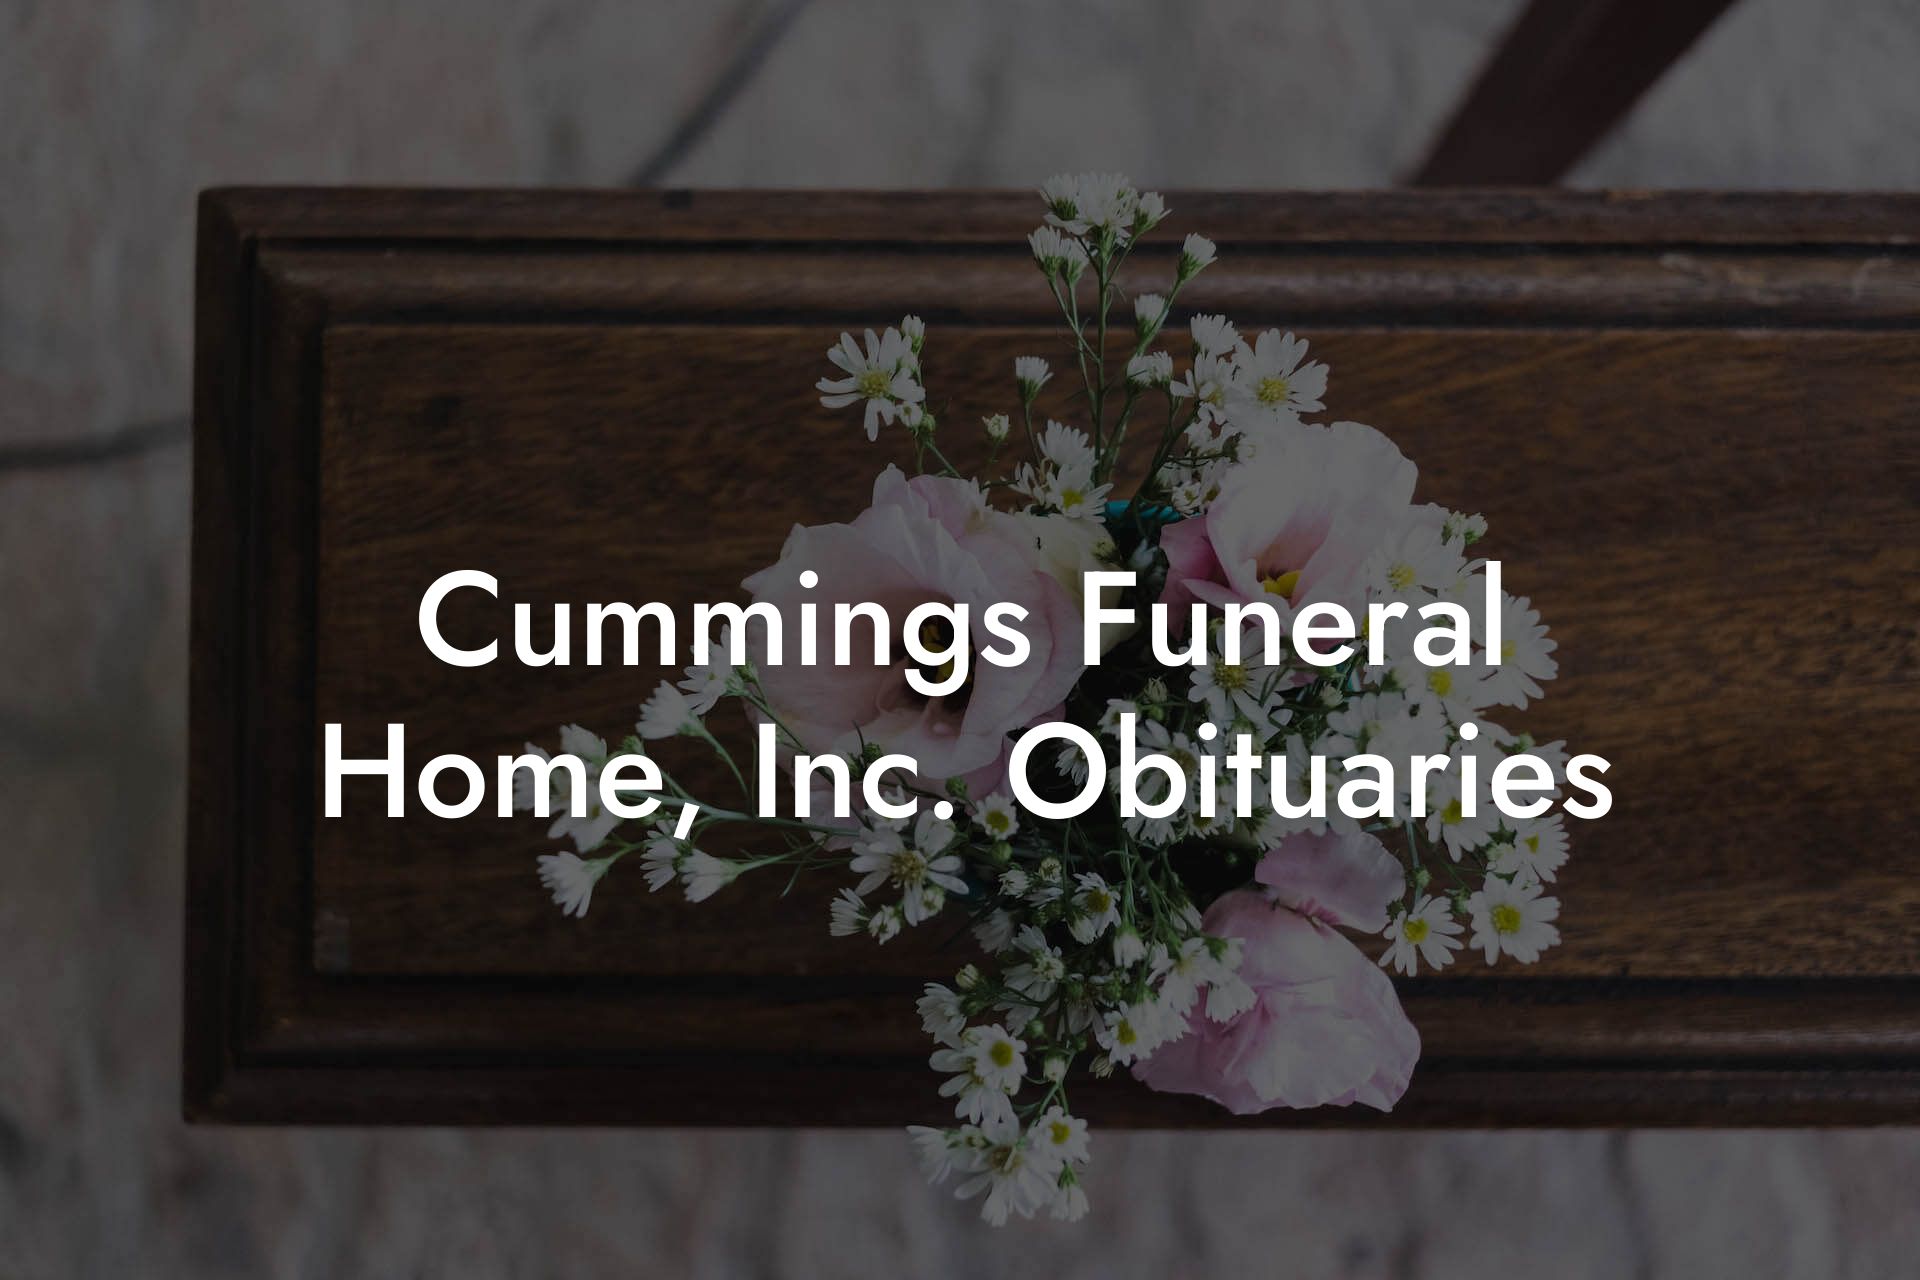 Cummings Funeral Home, Inc. Obituaries